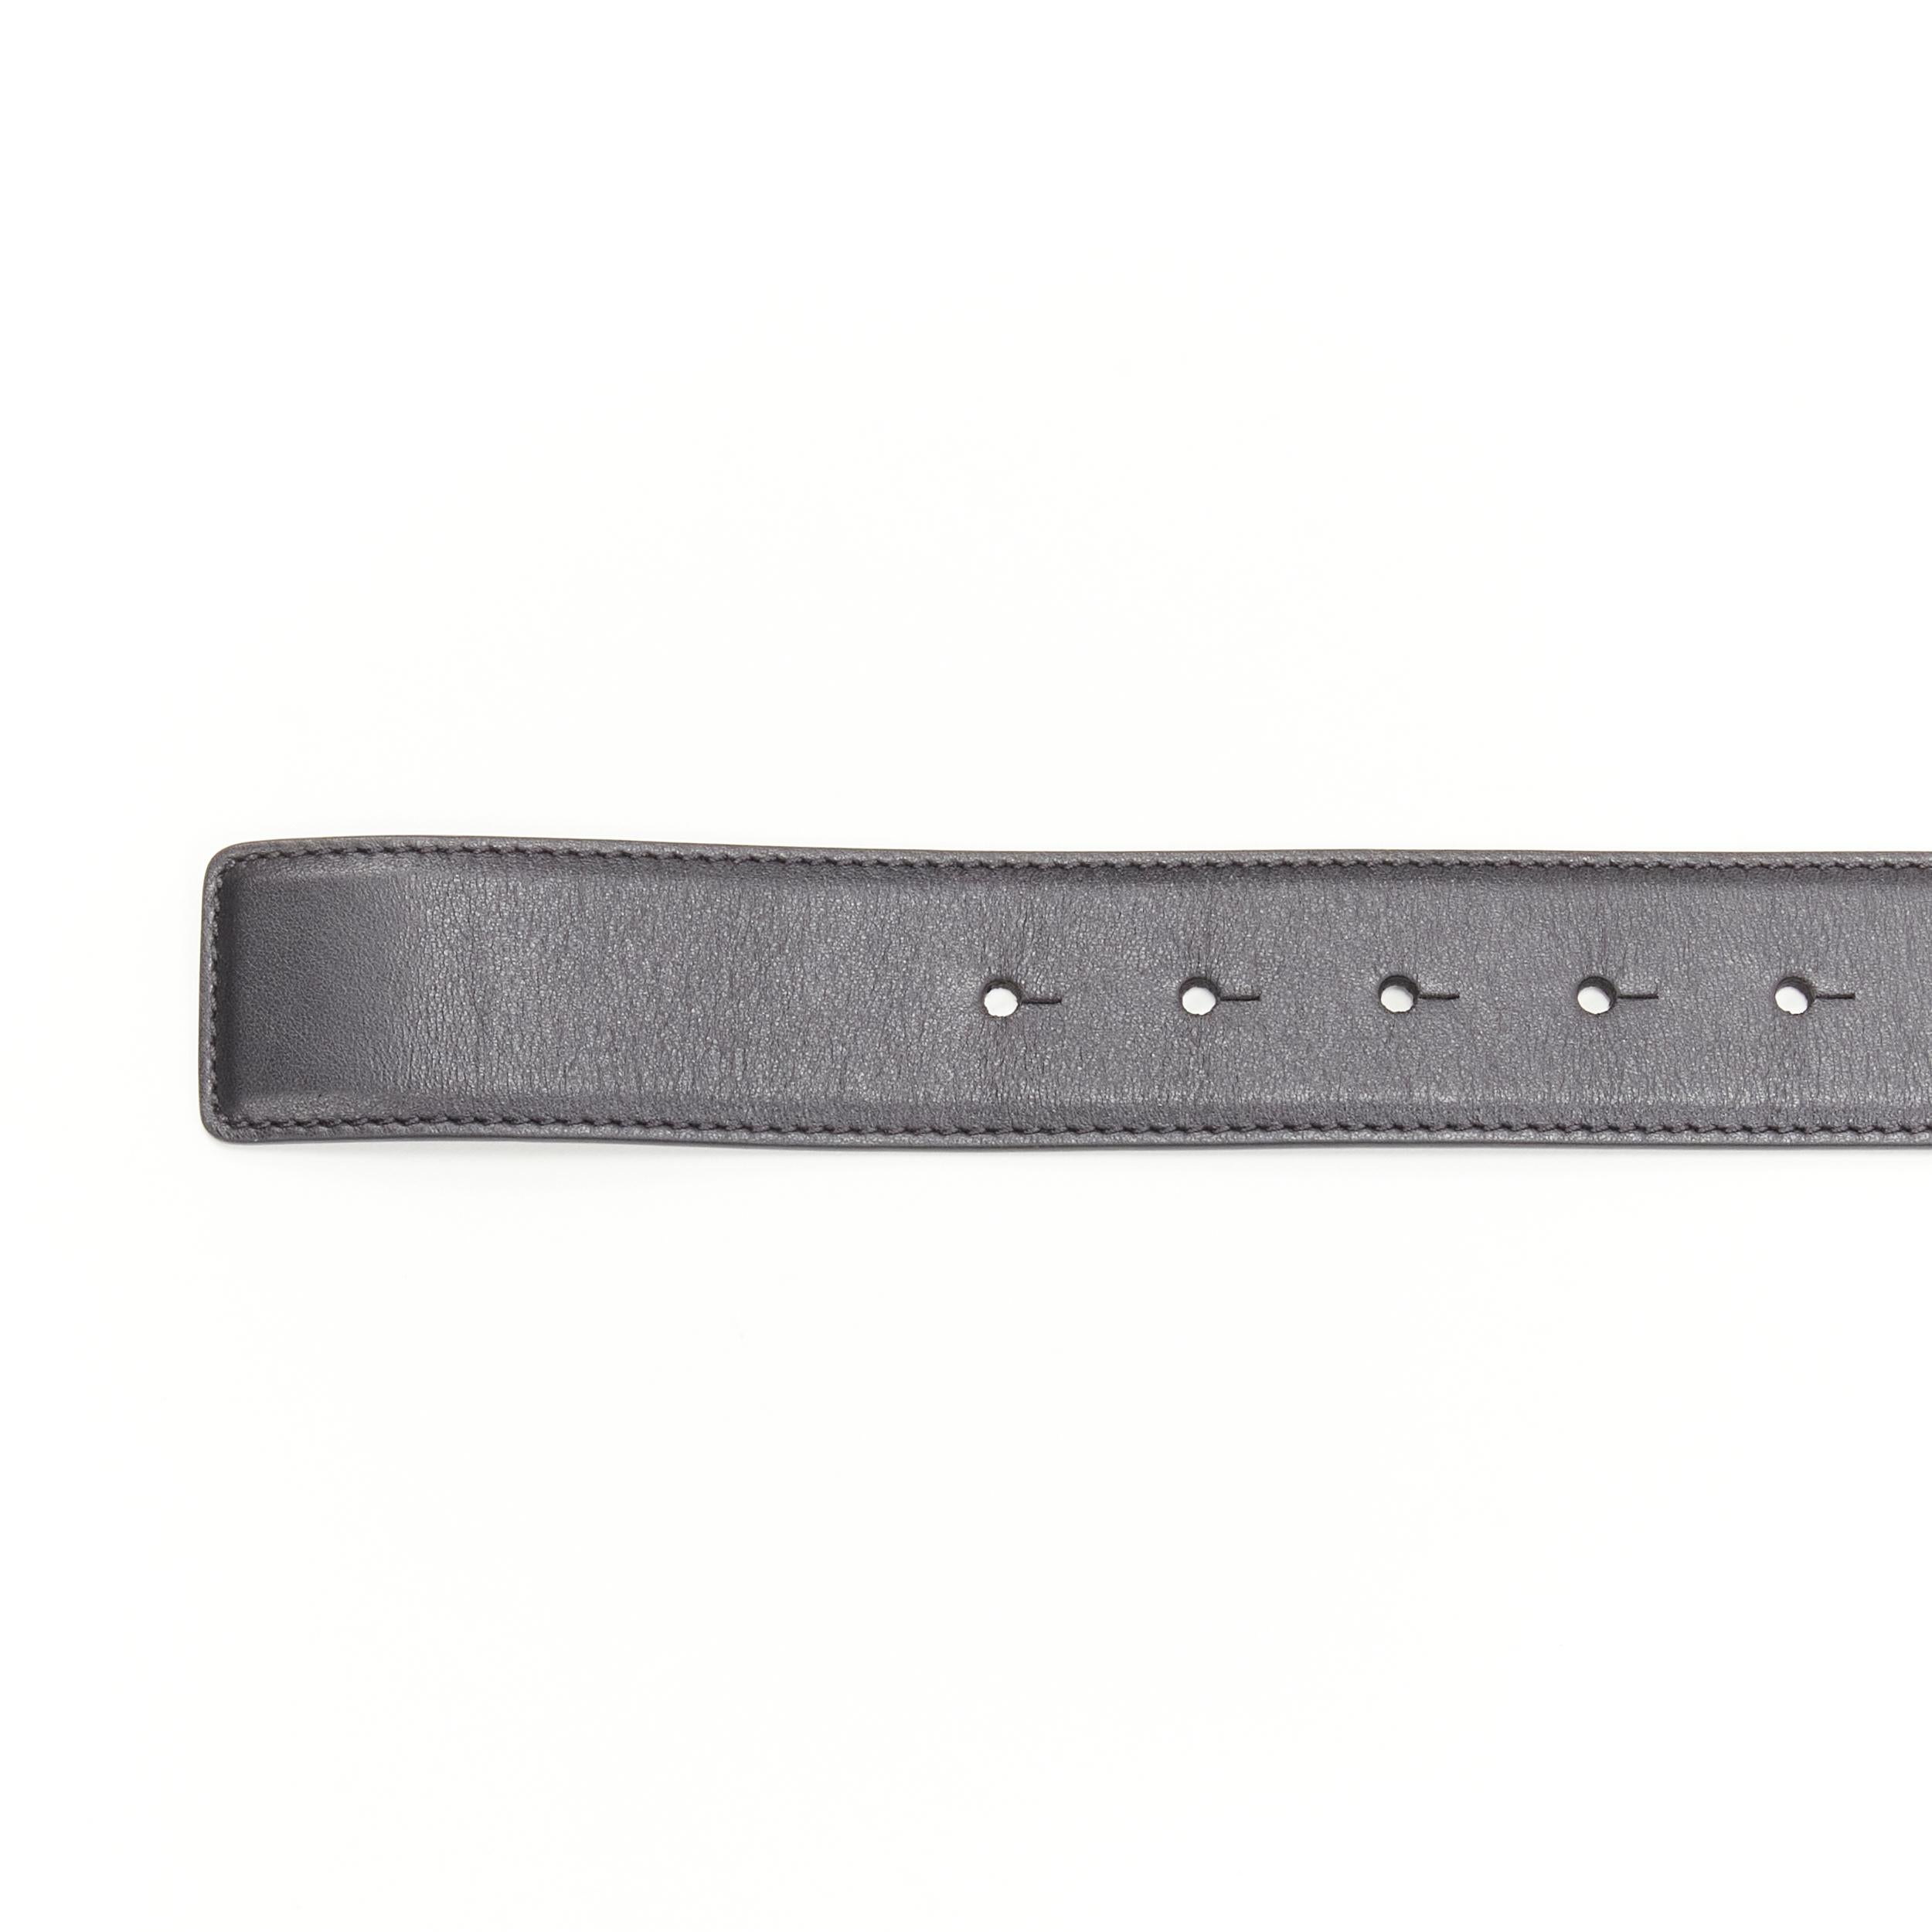 new VERSACE La Medusa ruthenium silver buckle black leather belt 110cm 42-46